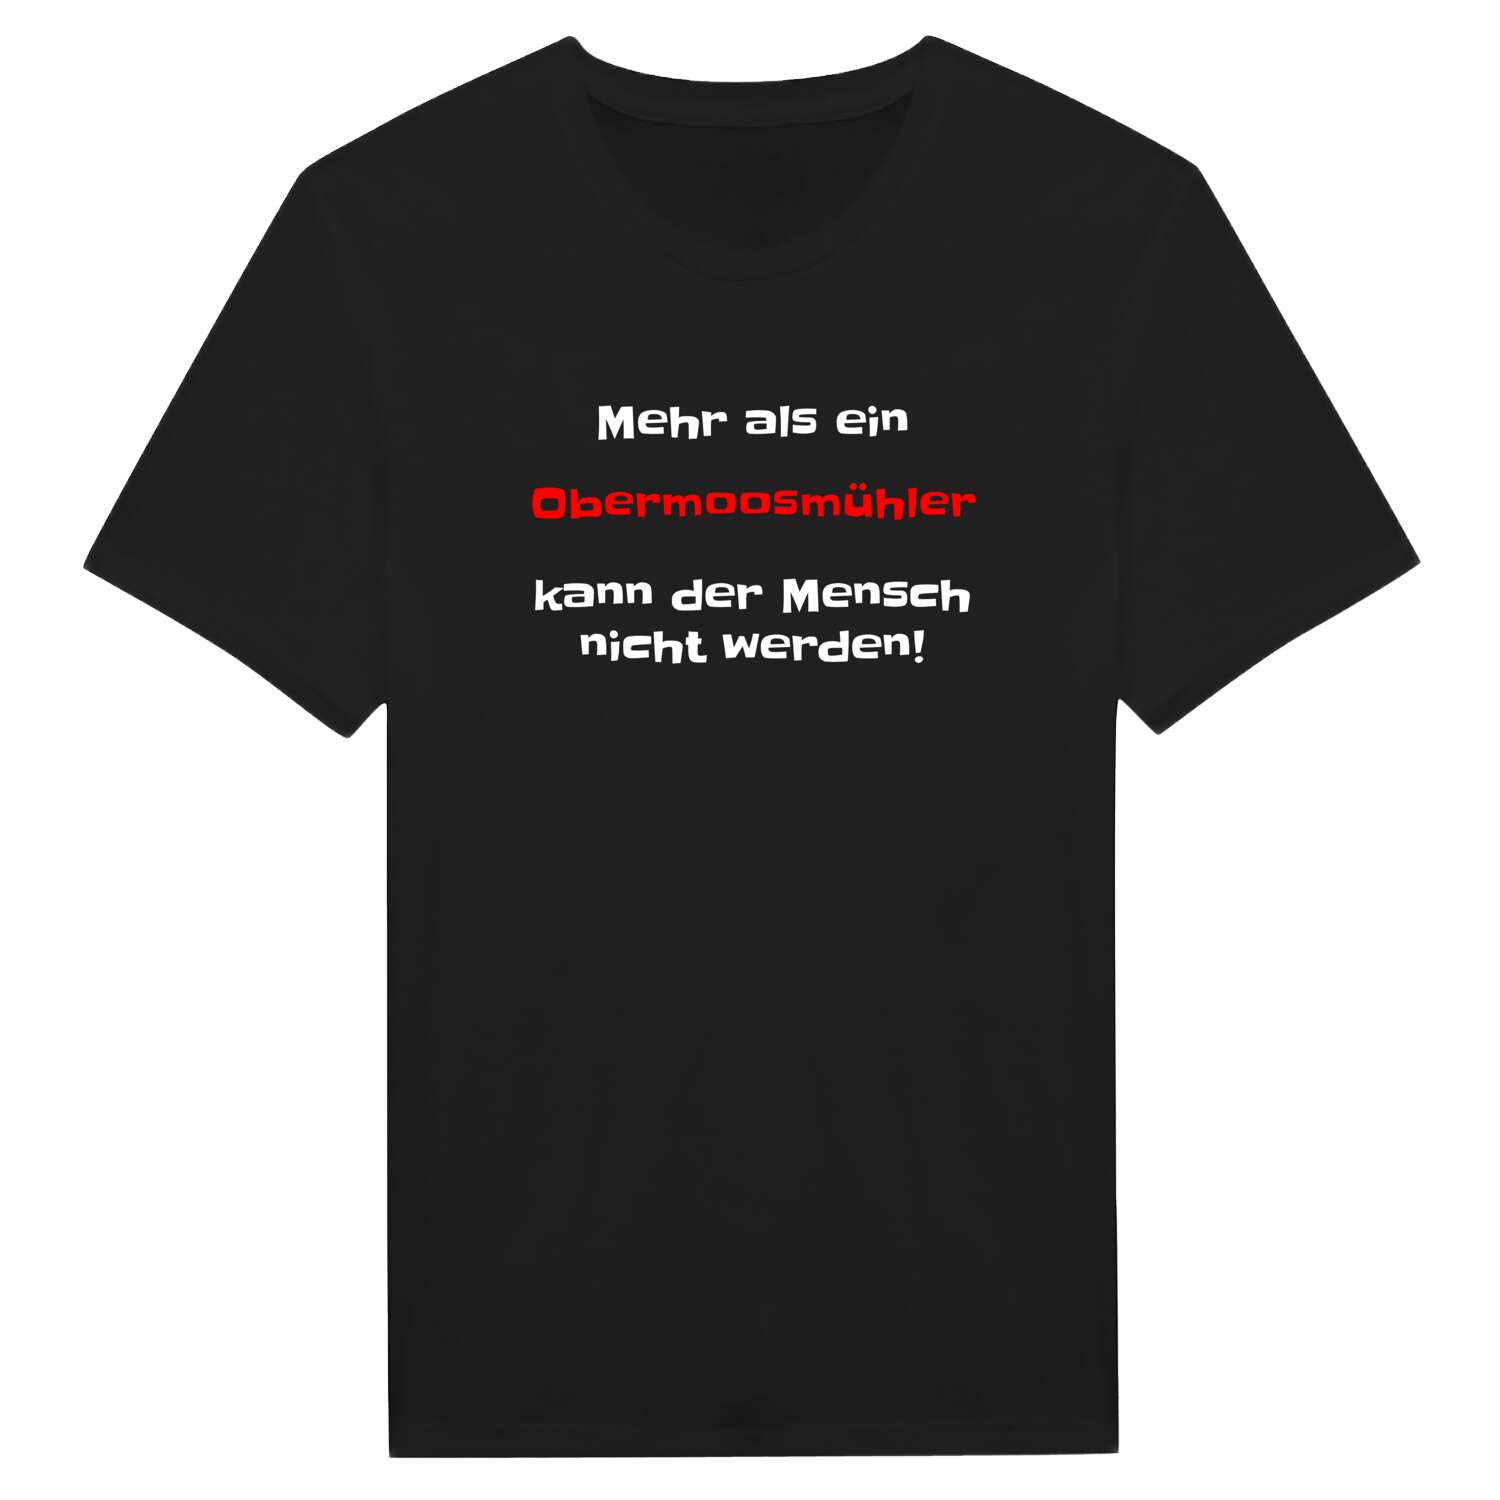 Obermoosmühl T-Shirt »Mehr als ein«